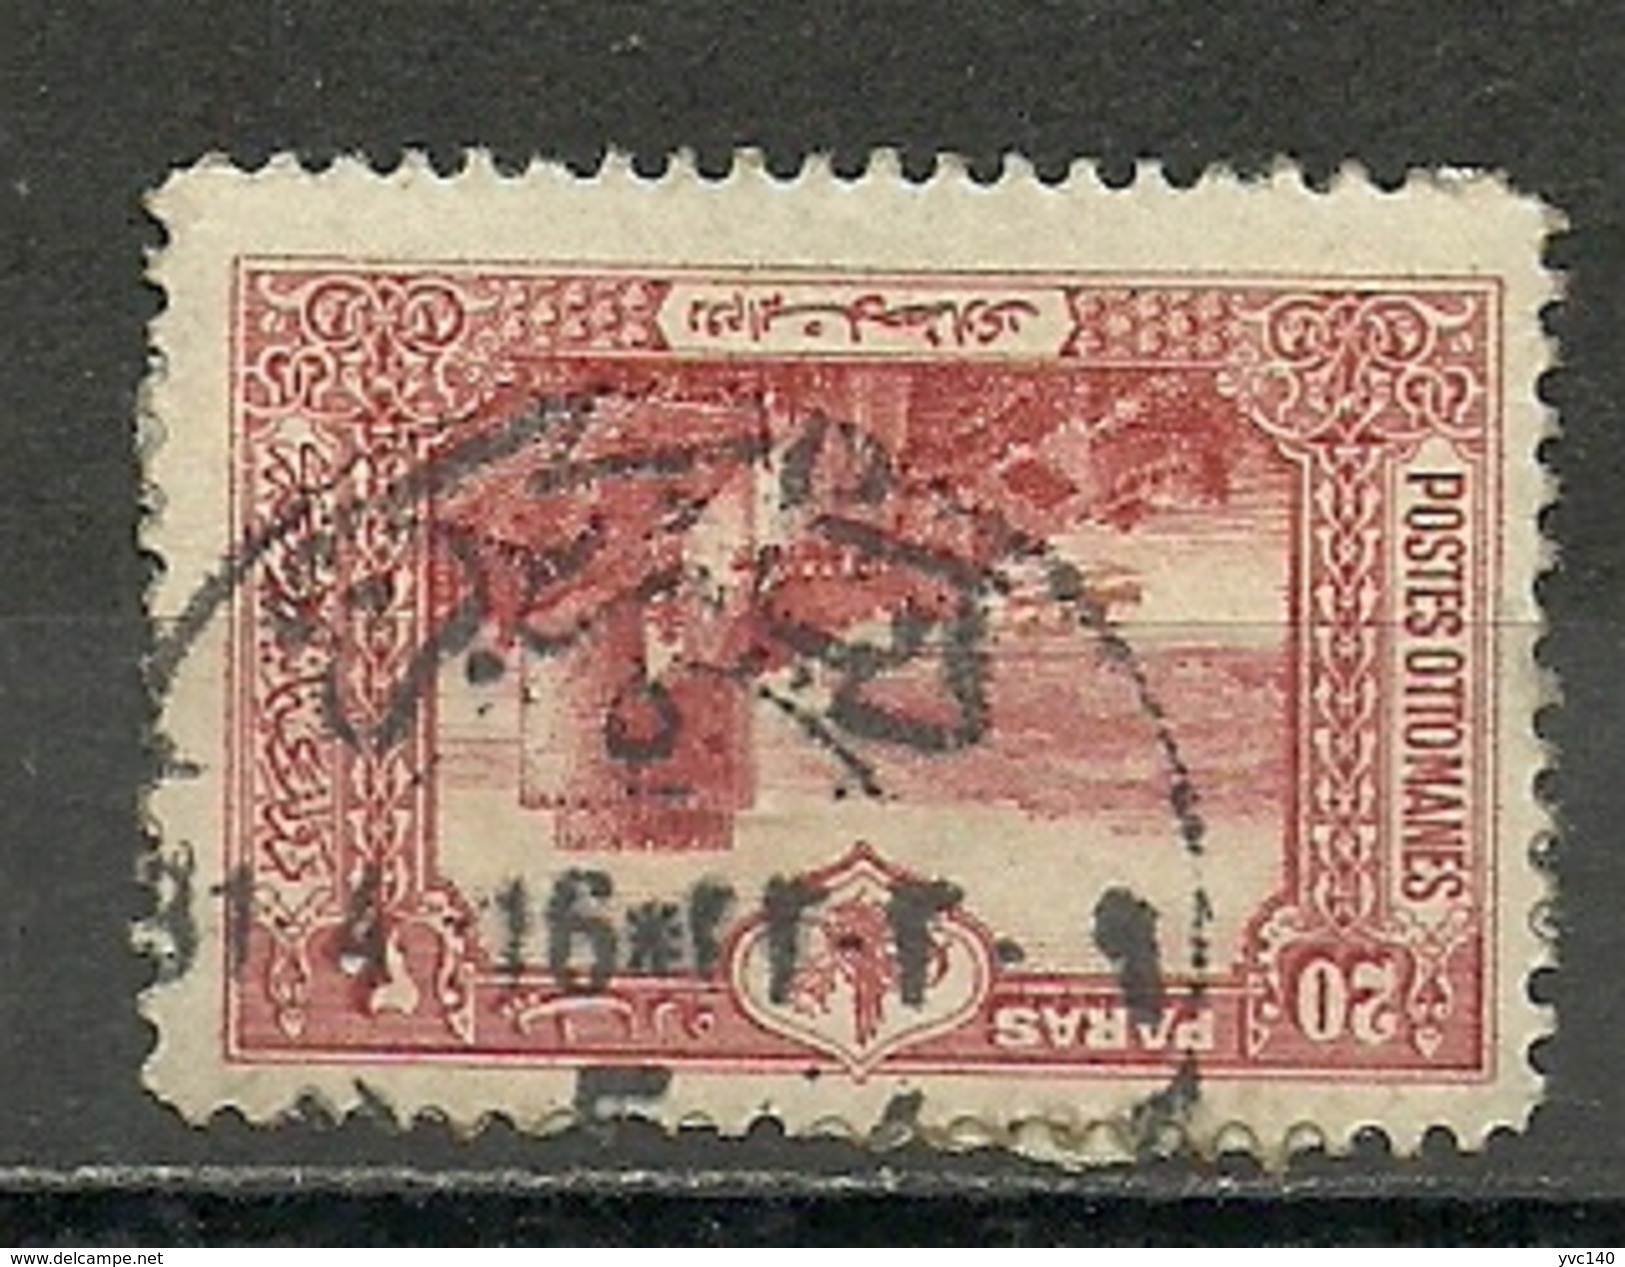 Turkey; 1914 Istanbul Pictorial London Printing Postage Stamp 20 P. "Diarbekir 5" Postmark - Gebraucht